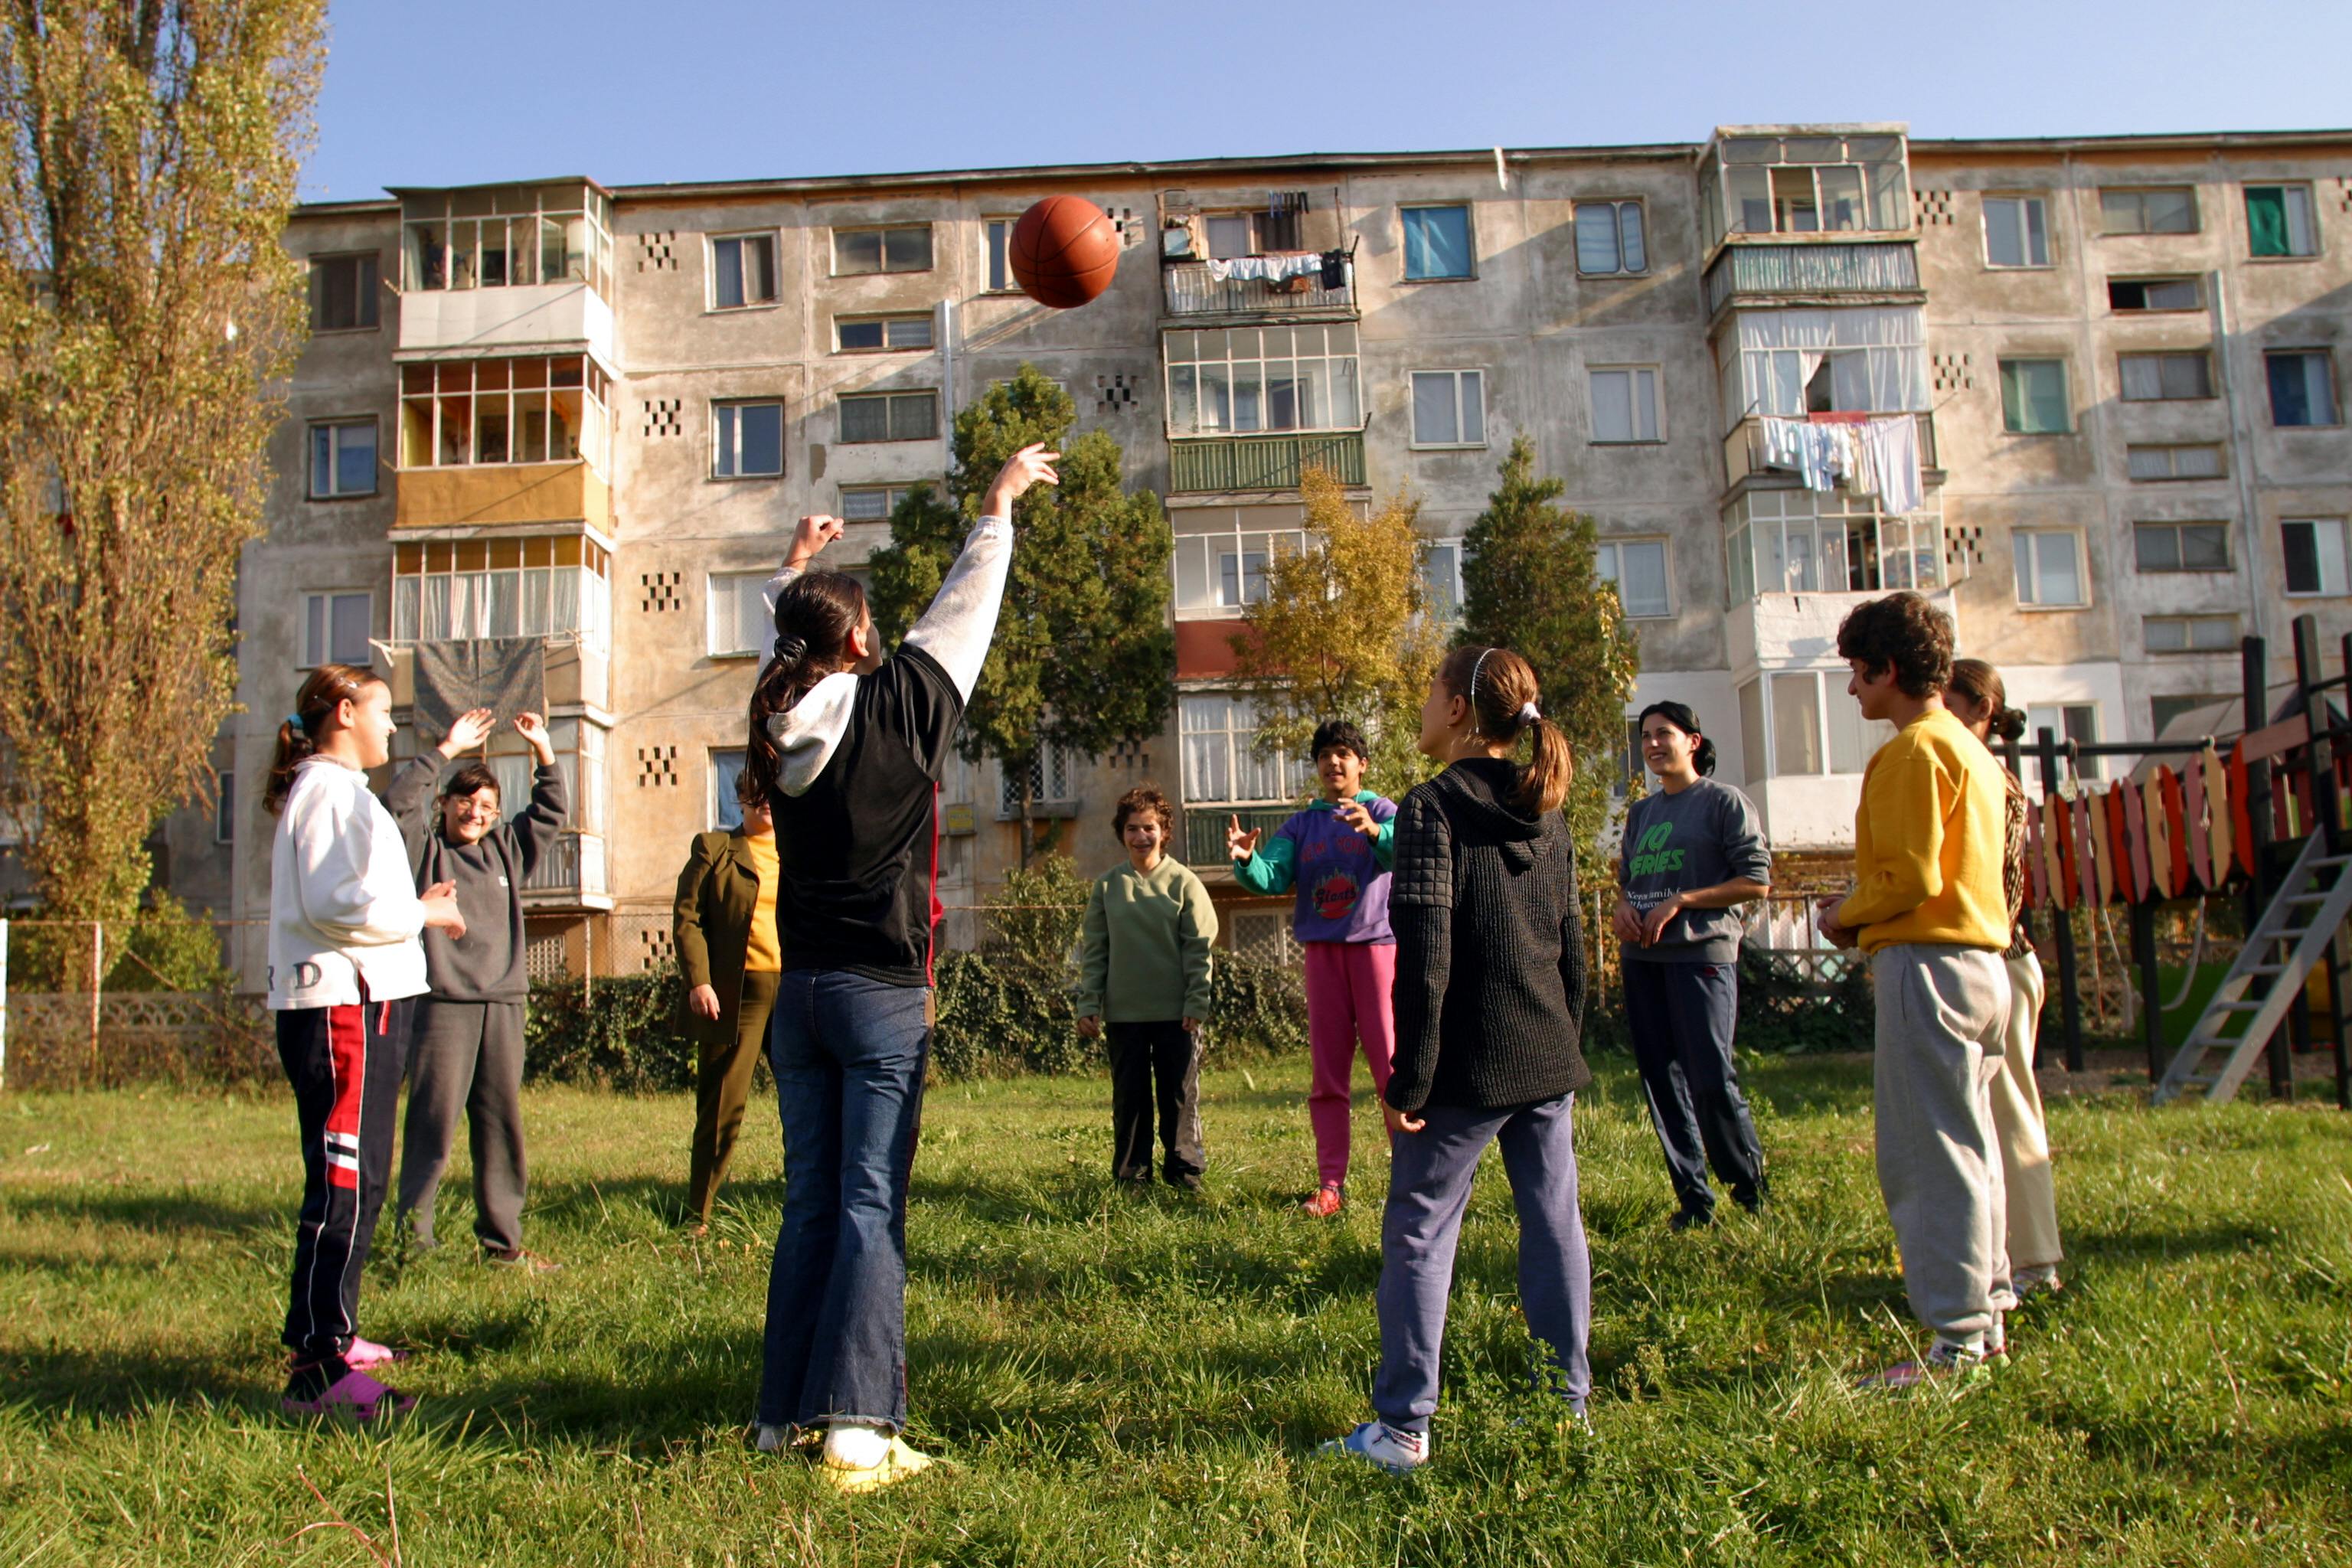 Un gruppo di bambini gioca fuori da una casa per bambini nella città di Constanta.